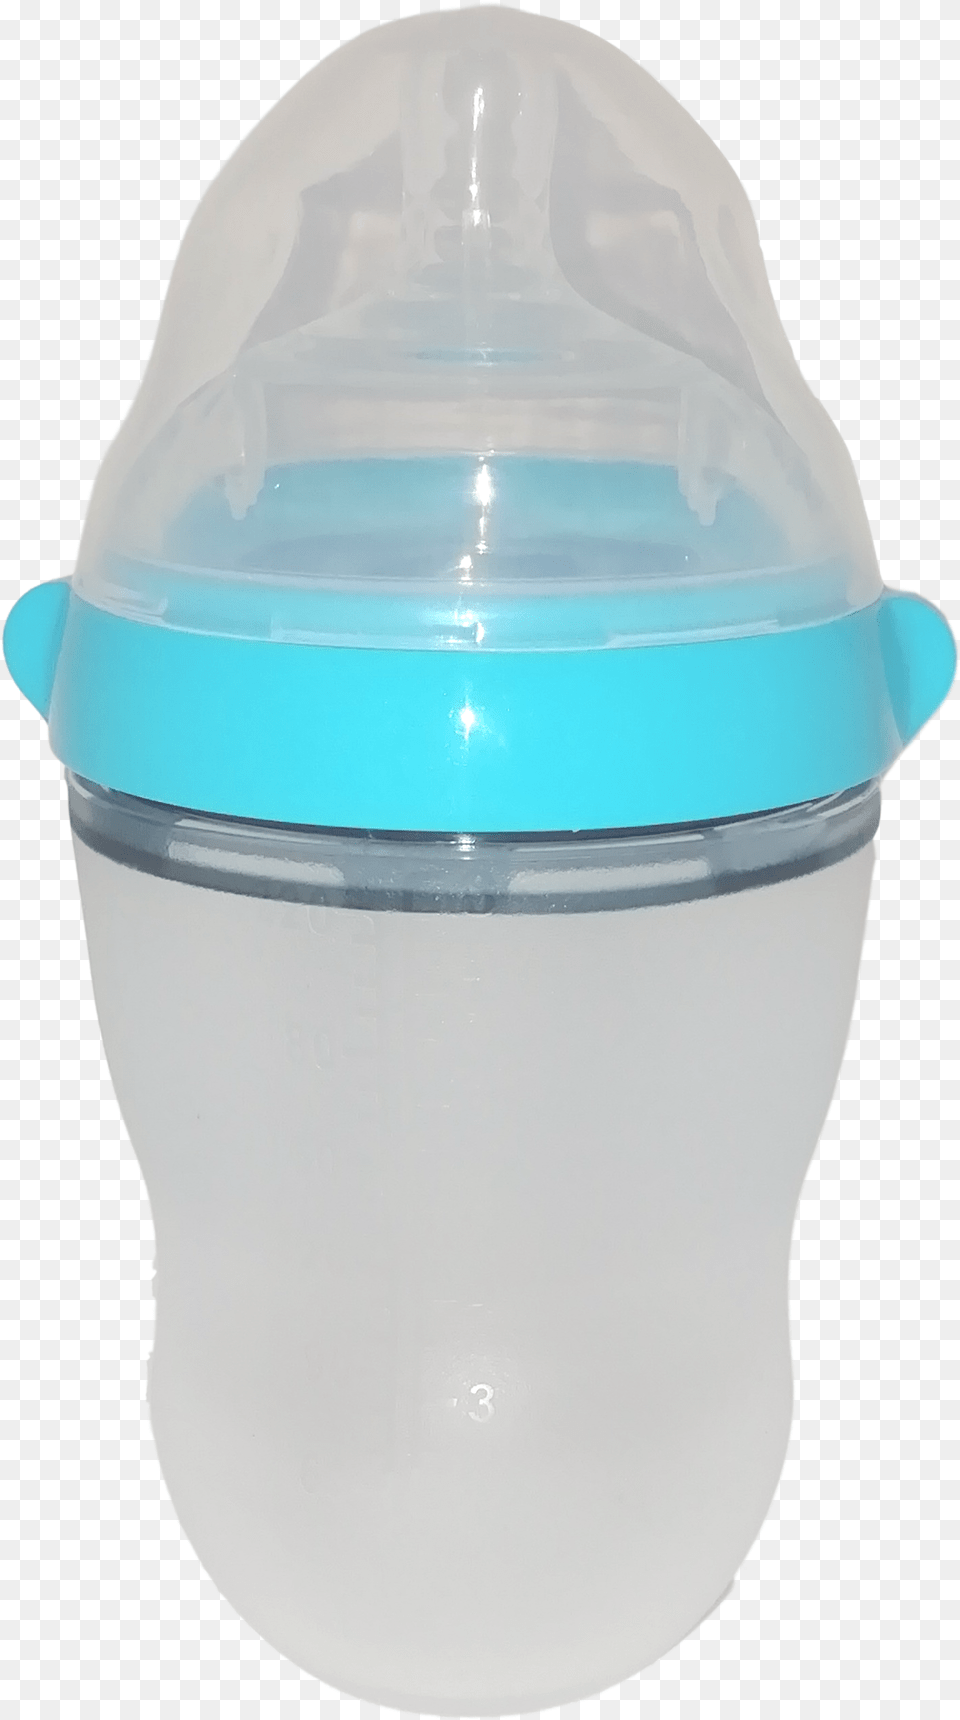 Baby Bottle, Bowl, Shaker, Jar Free Transparent Png